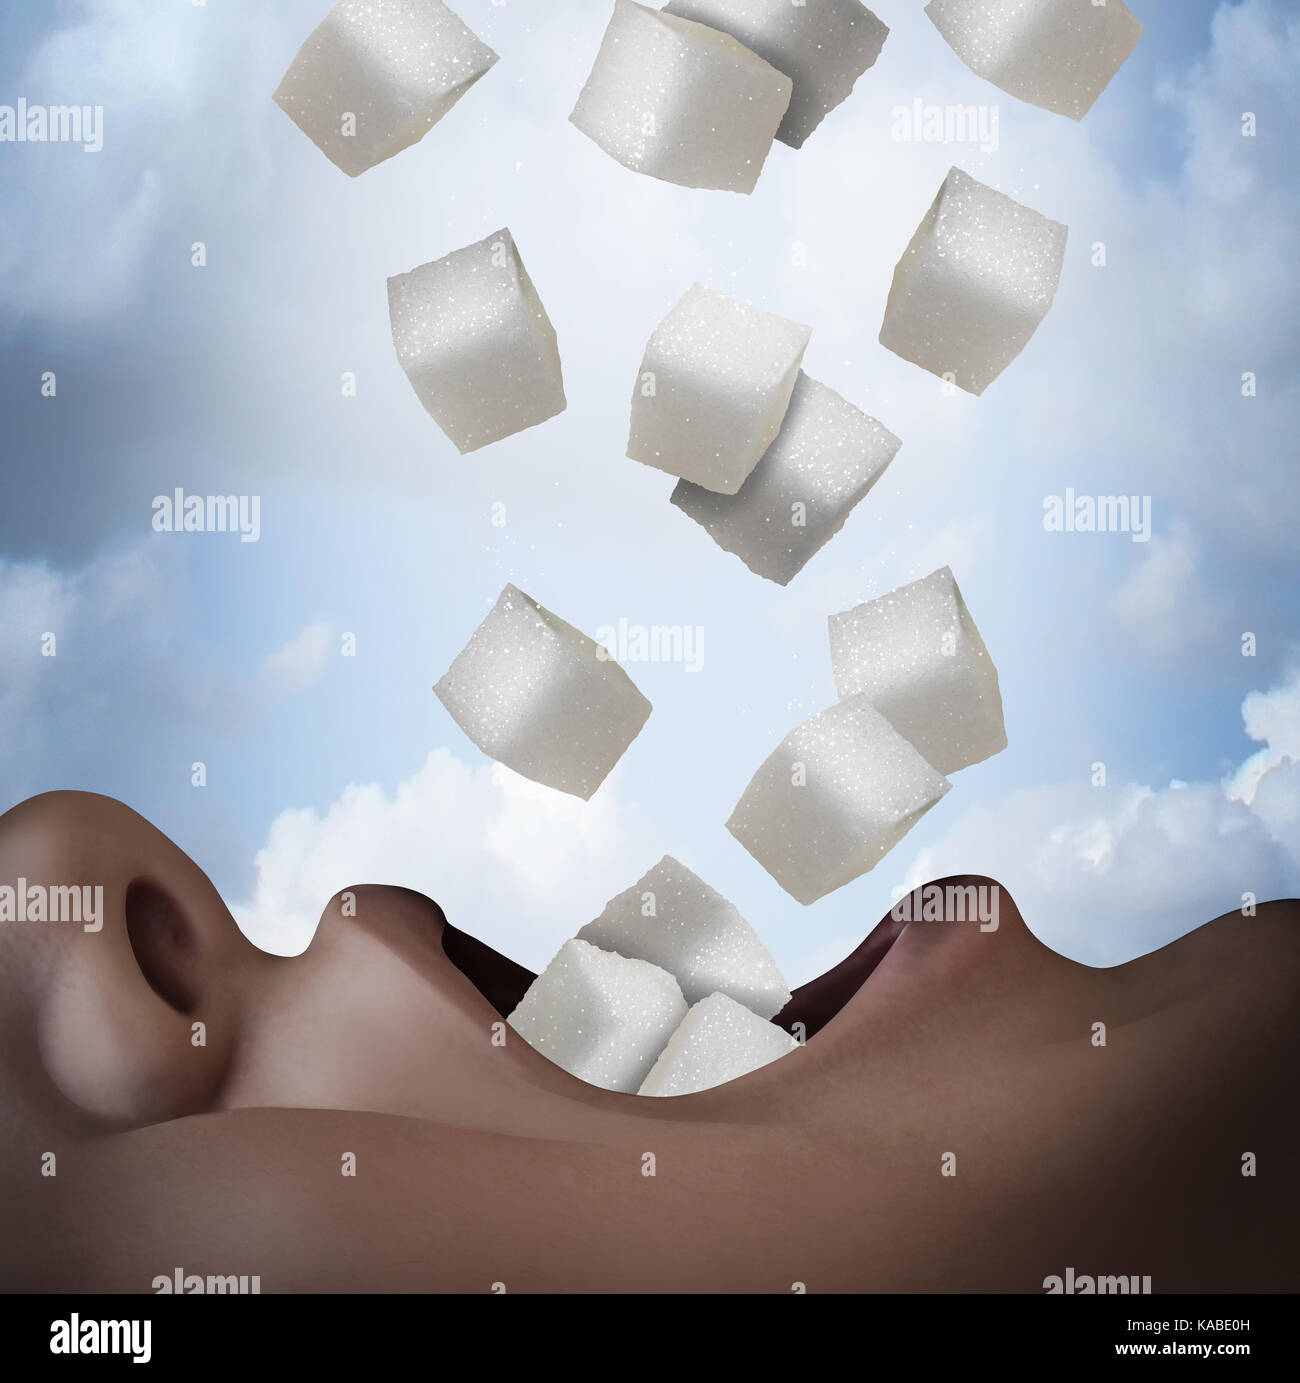 Zucker Konzept Essen als eine ungesunde Lebensmittel Zutat als Person verbrauchen raffinierte Kristallzucker cube Snack als Gesundheitsrisiko Symbol. Stockfoto